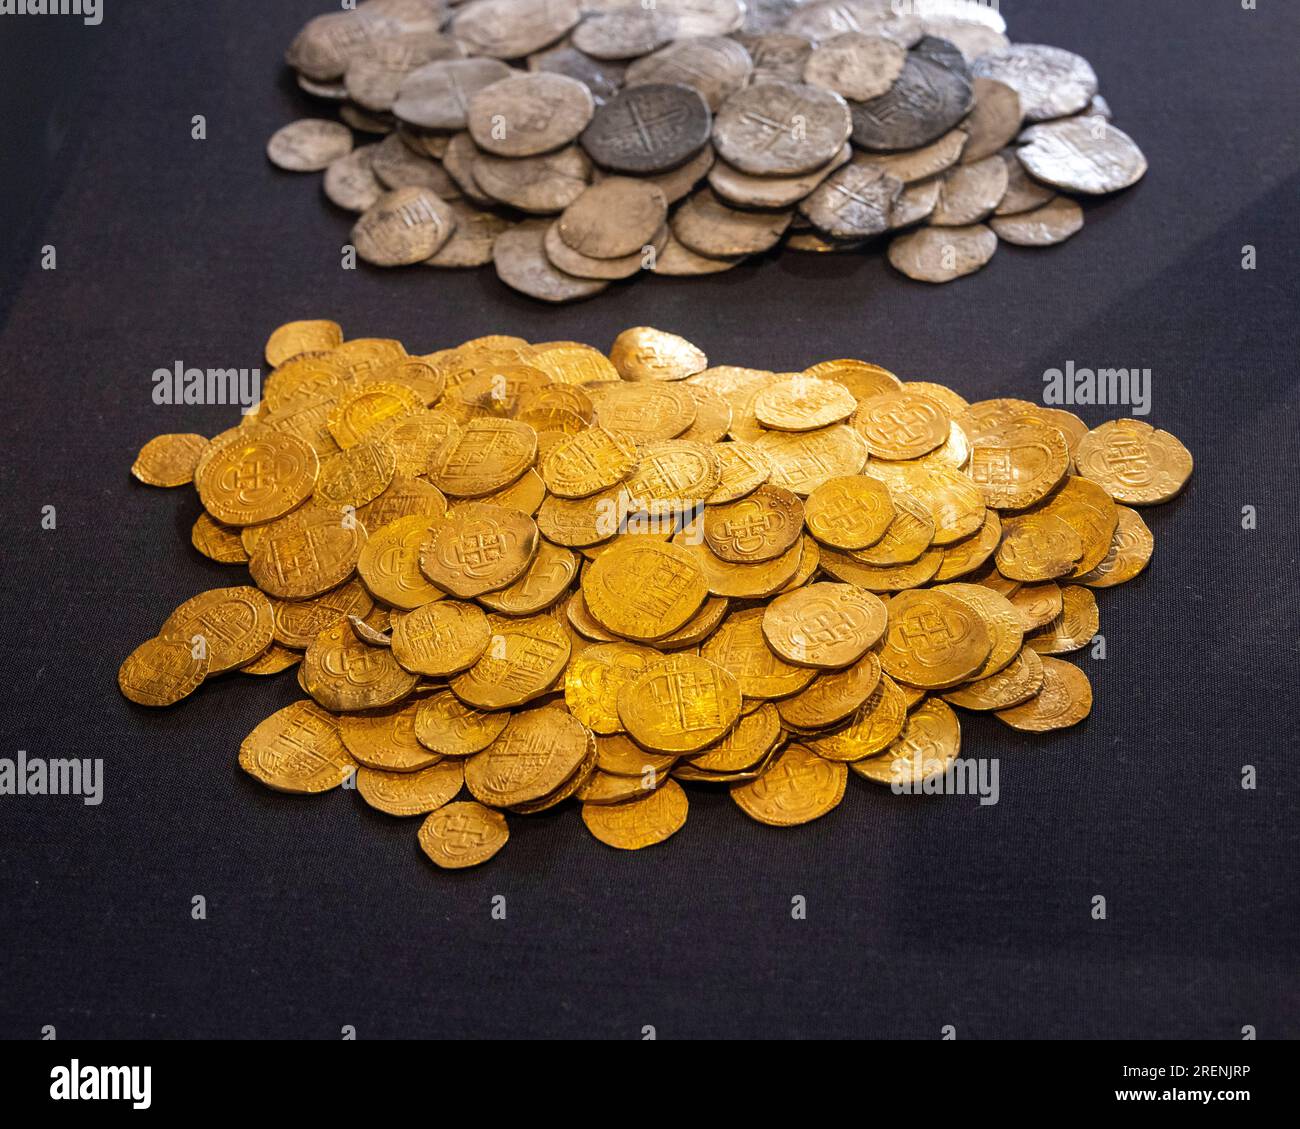 Gold- und Silbermünzen aus dem Wrack der spanischen Armada Galeone La Girona, heute im Ulster Museum, Belfast, UK Stockfoto